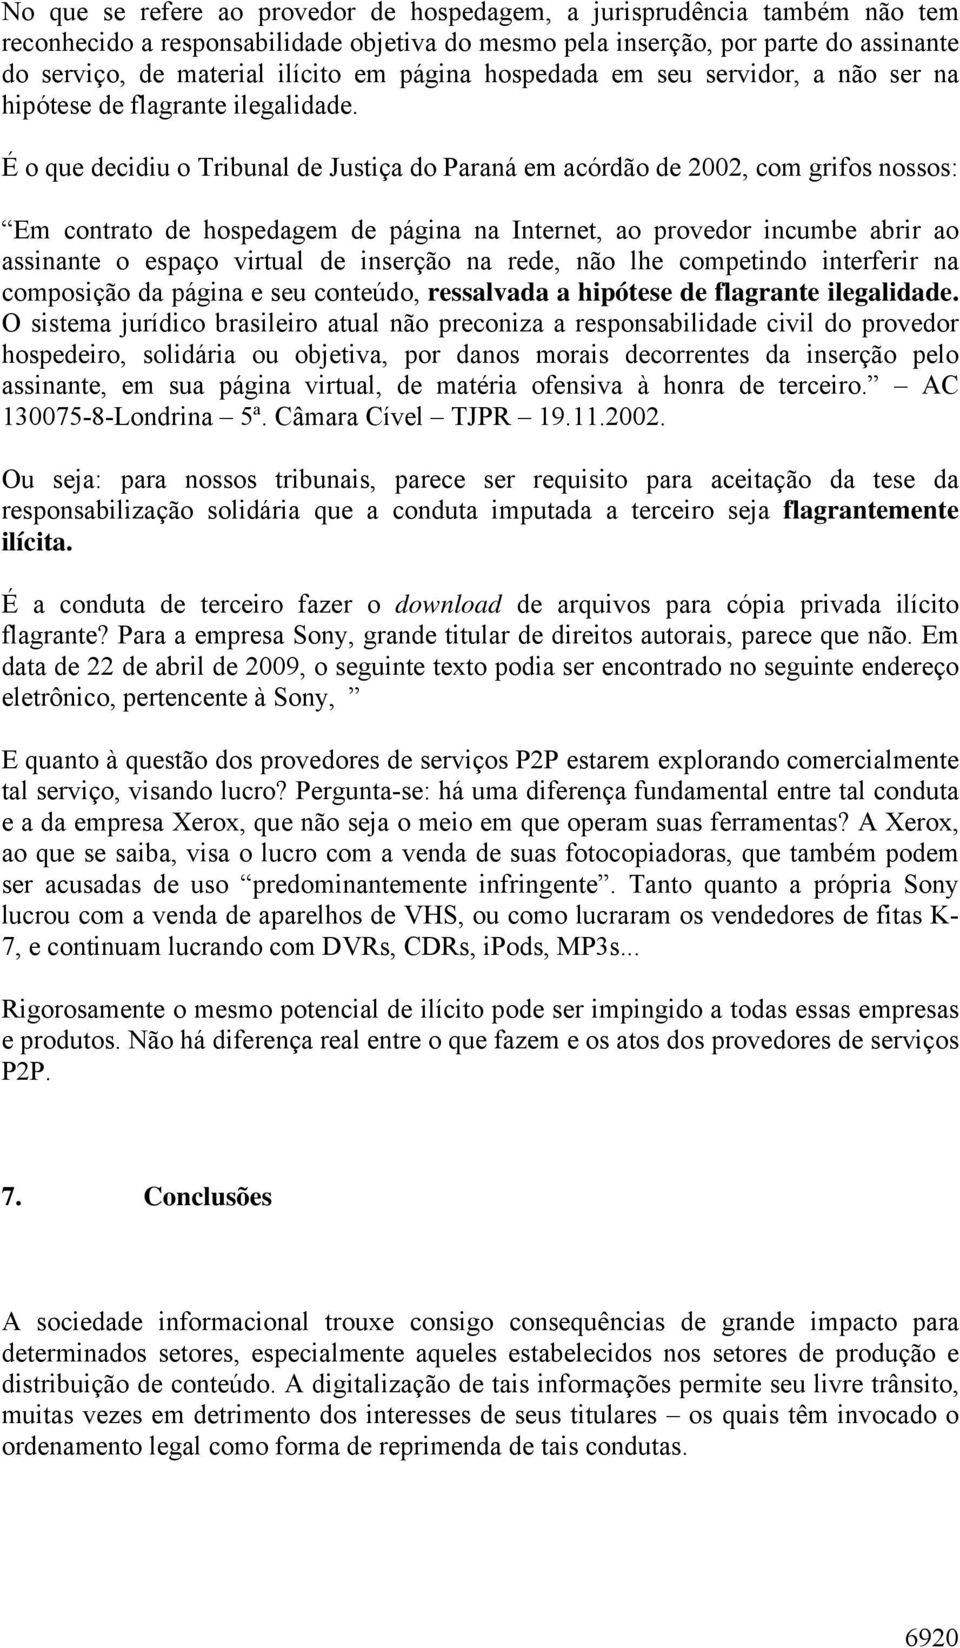 É o que decidiu o Tribunal de Justiça do Paraná em acórdão de 2002, com grifos nossos: Em contrato de hospedagem de página na Internet, ao provedor incumbe abrir ao assinante o espaço virtual de